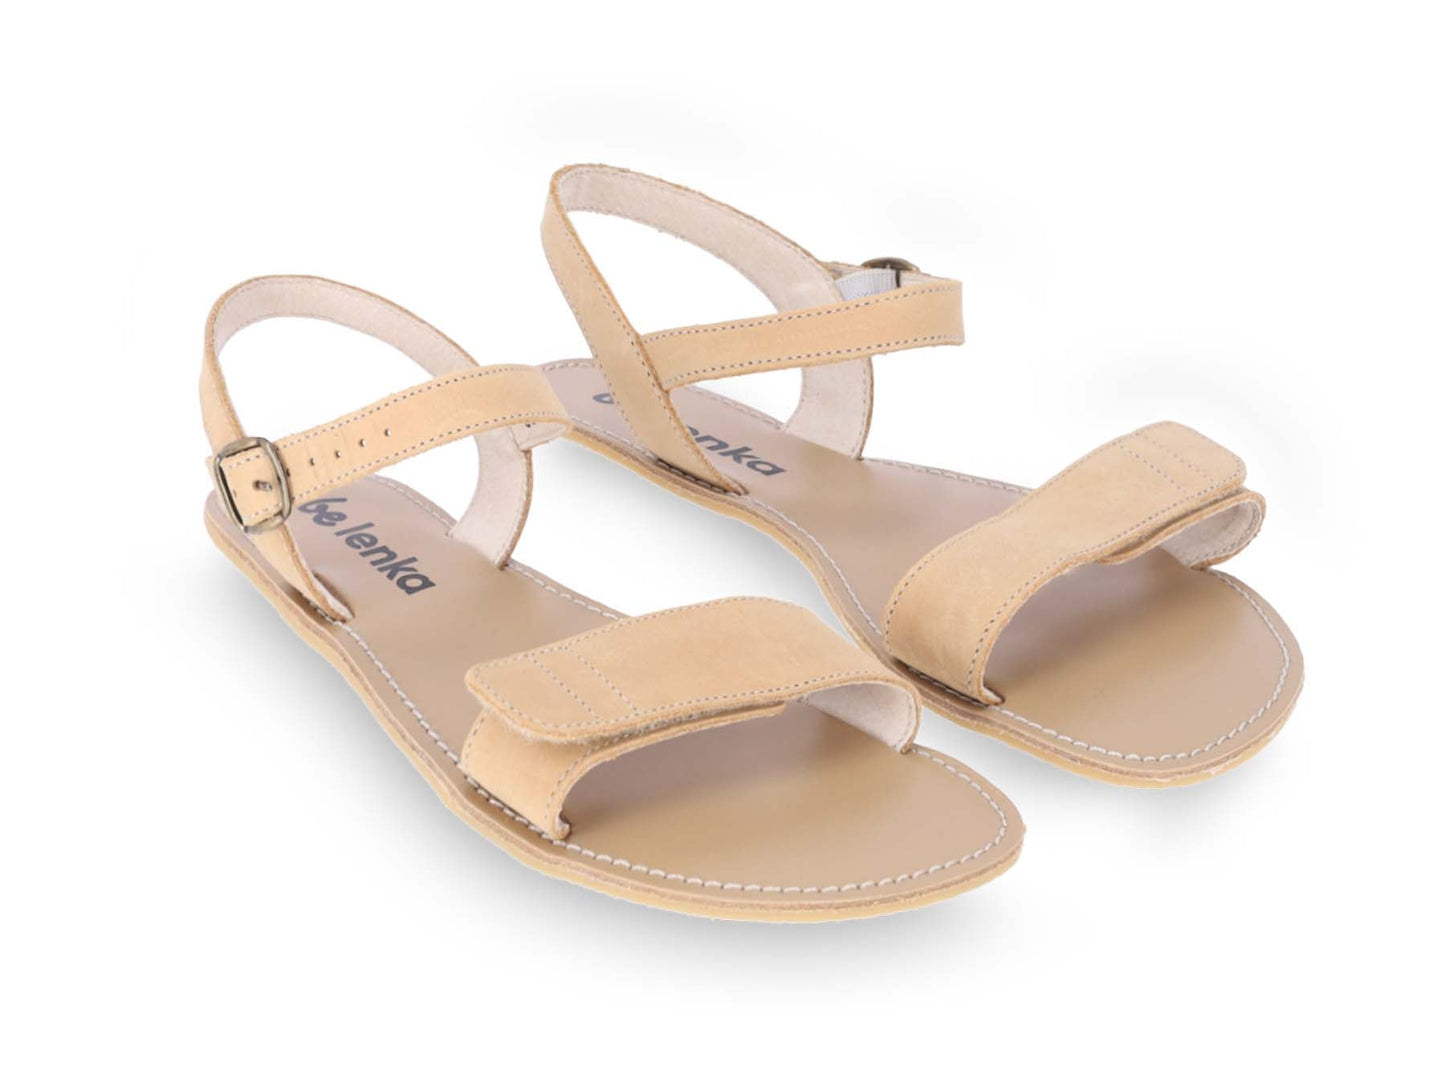 Be Lenka Grace barfods sandaler til kvinder i farven sand, par